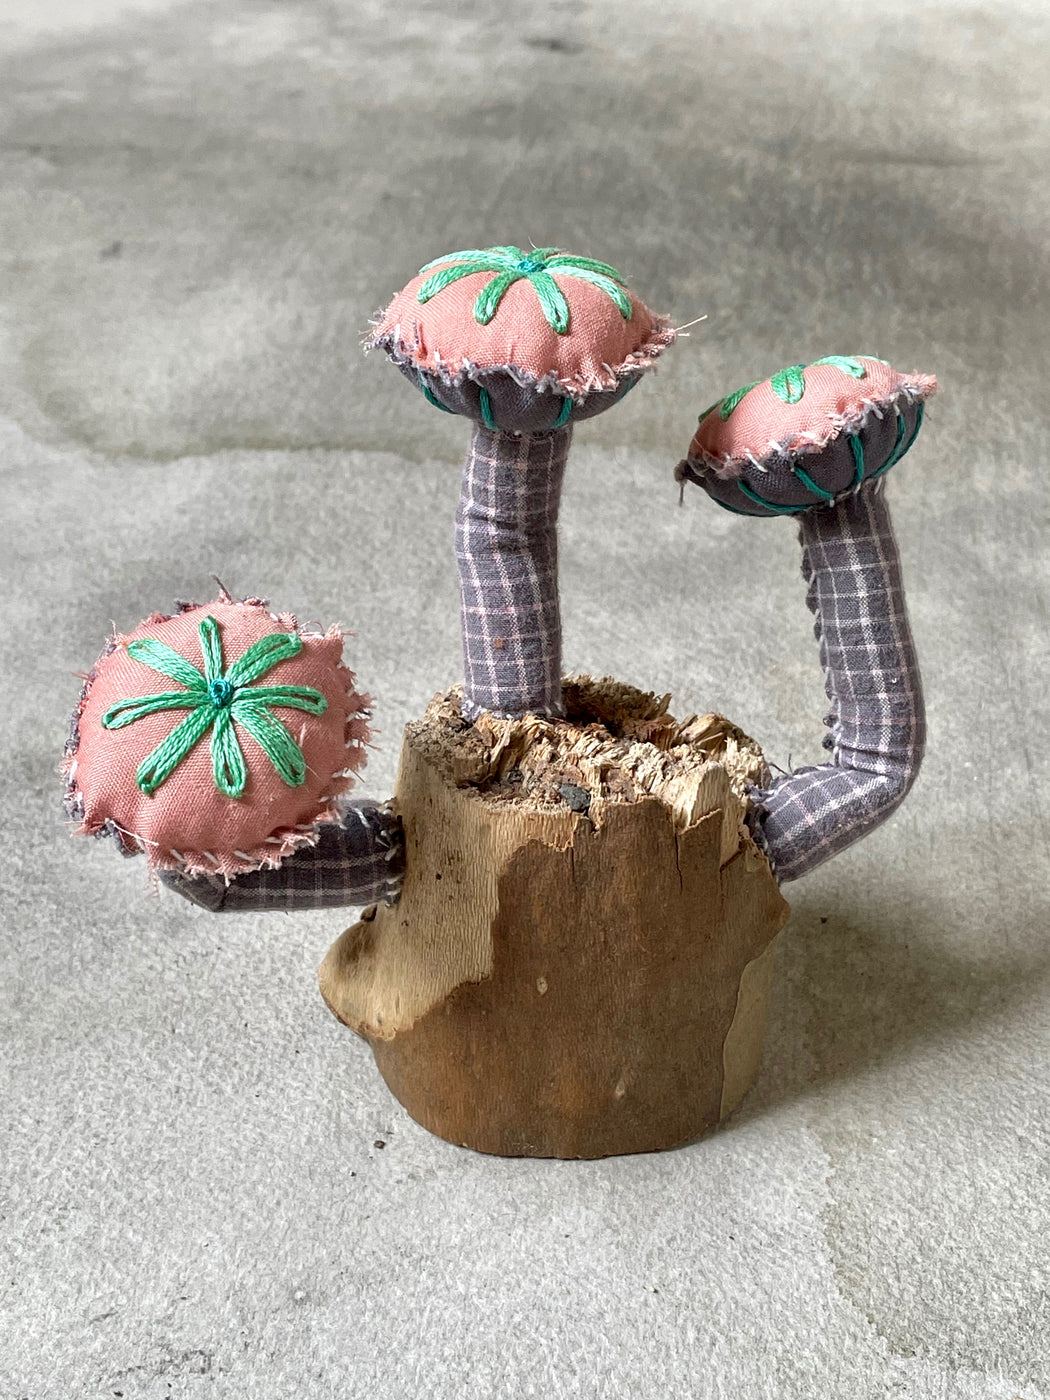 Fabric "Fungi" Sculpture by Amanda Adams